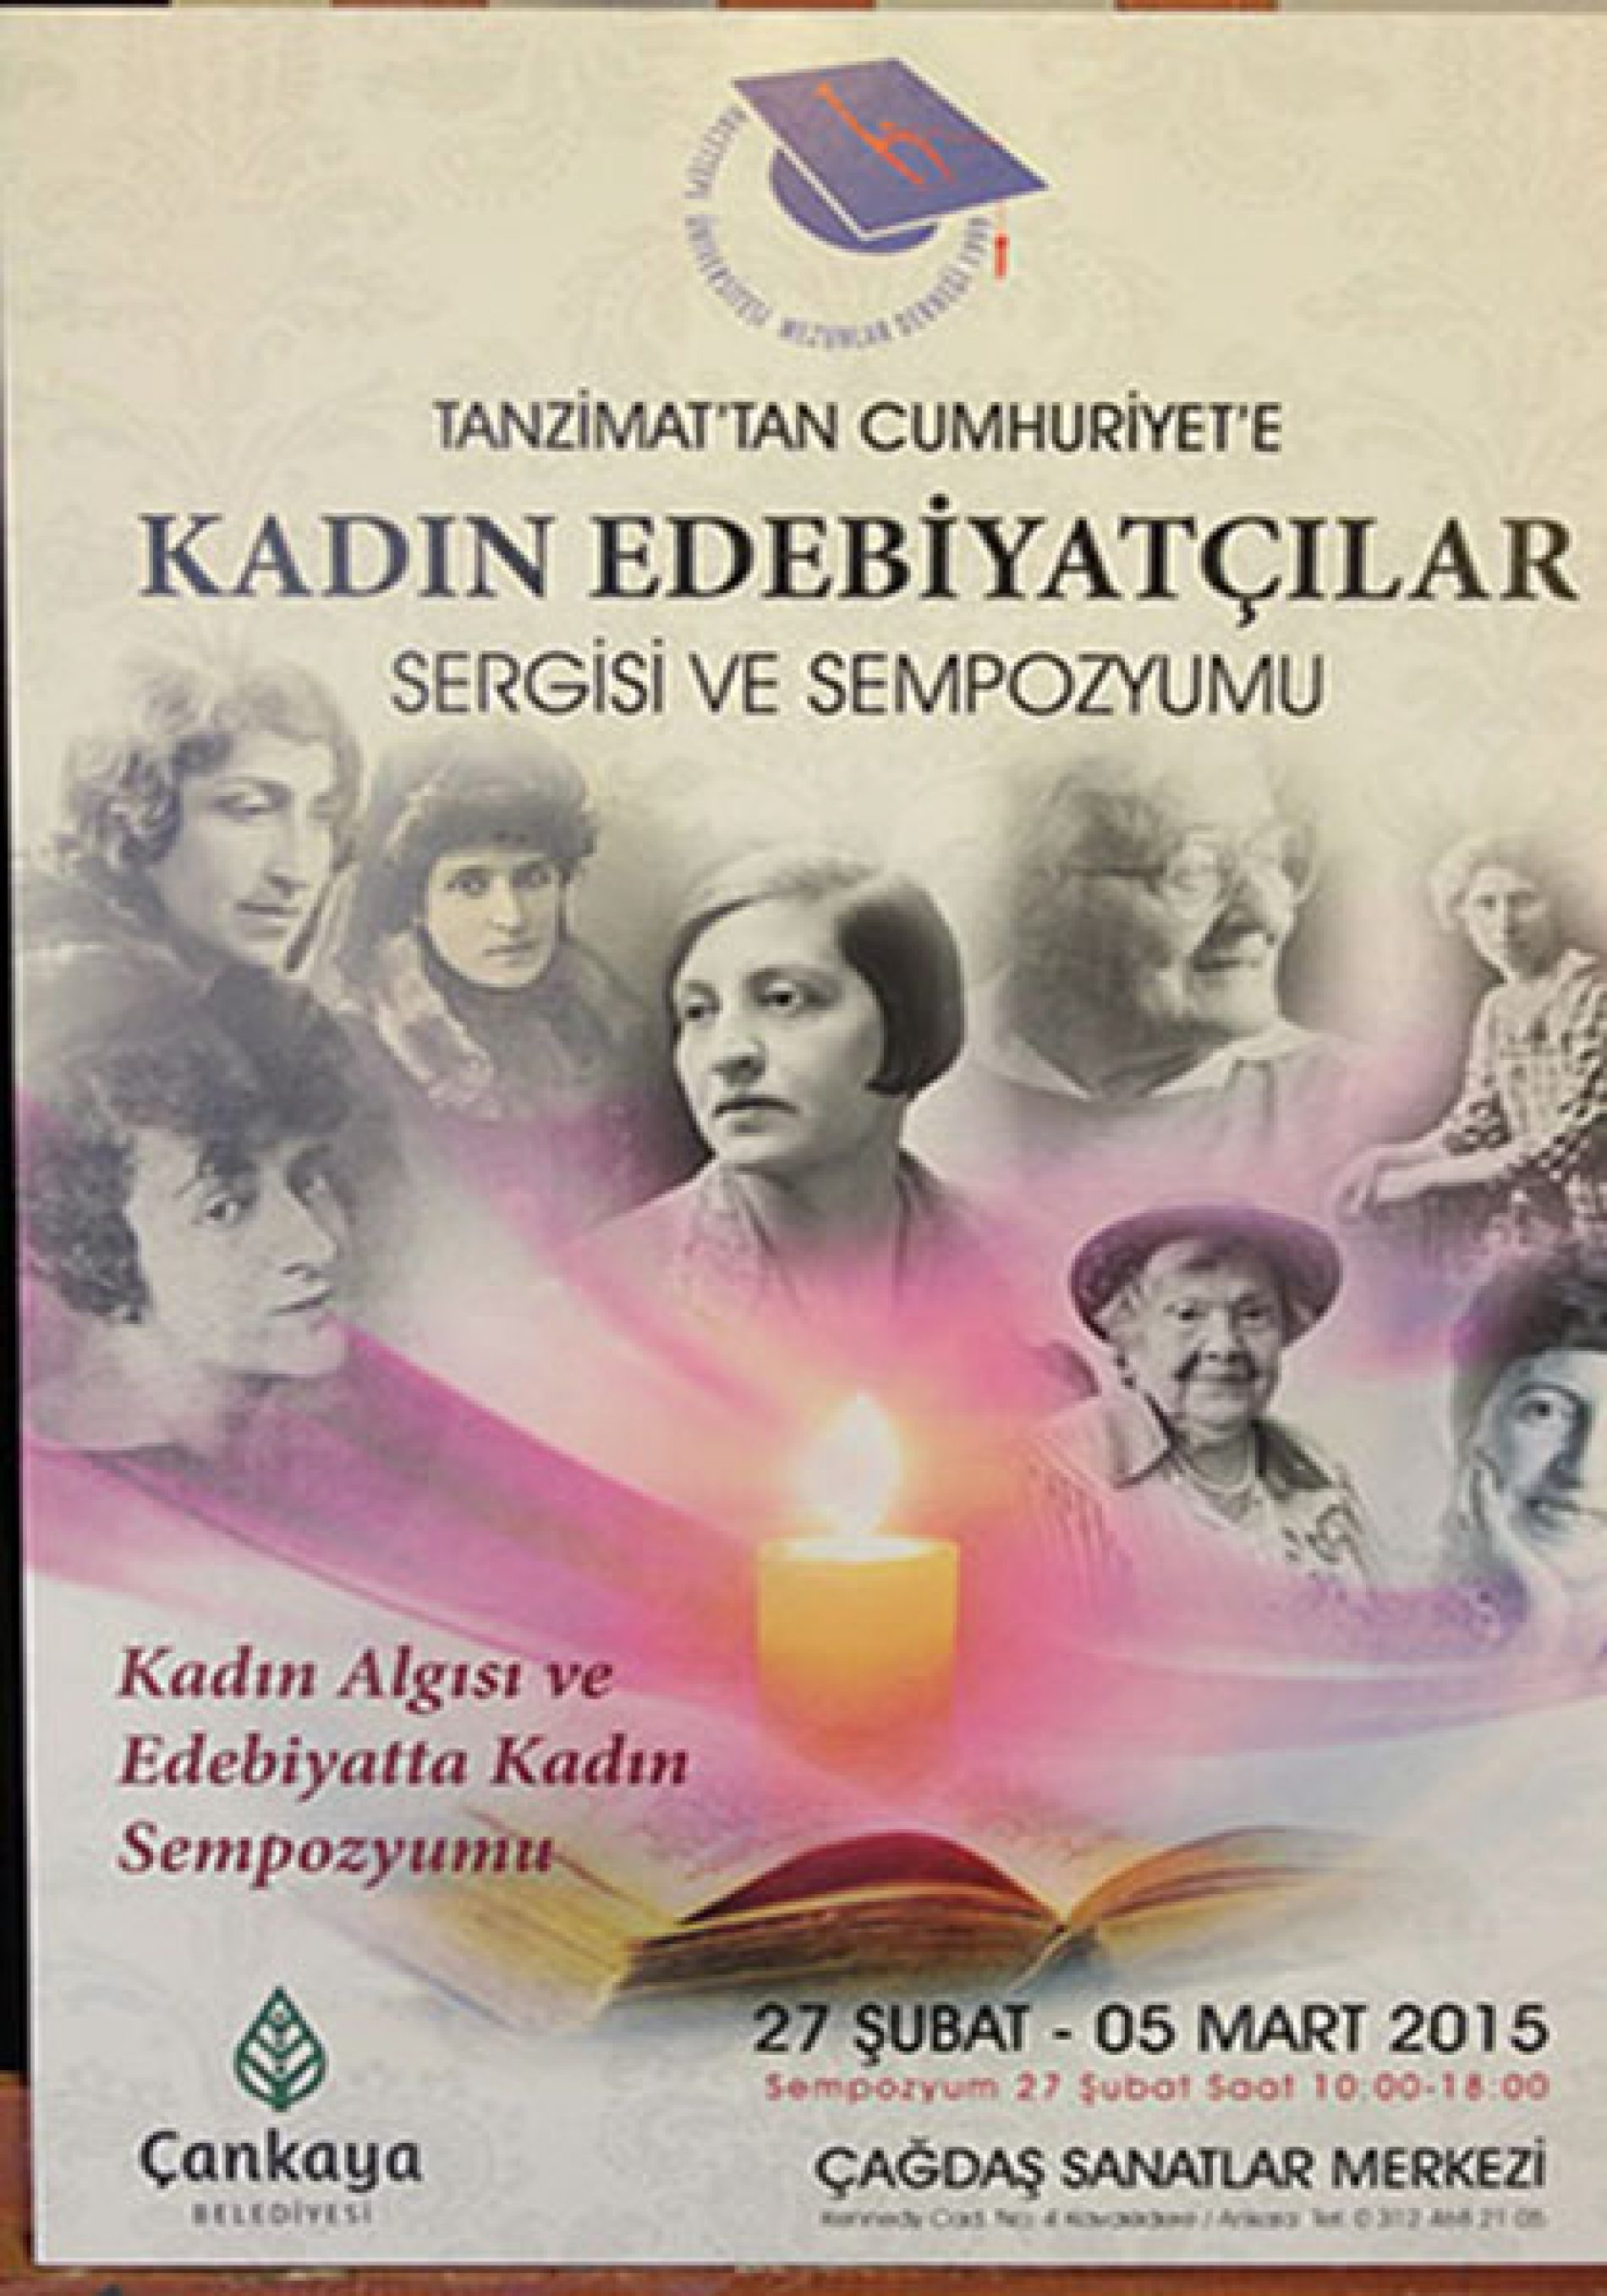 Kadın Edebiyatçılar – Ankara Etkinliği